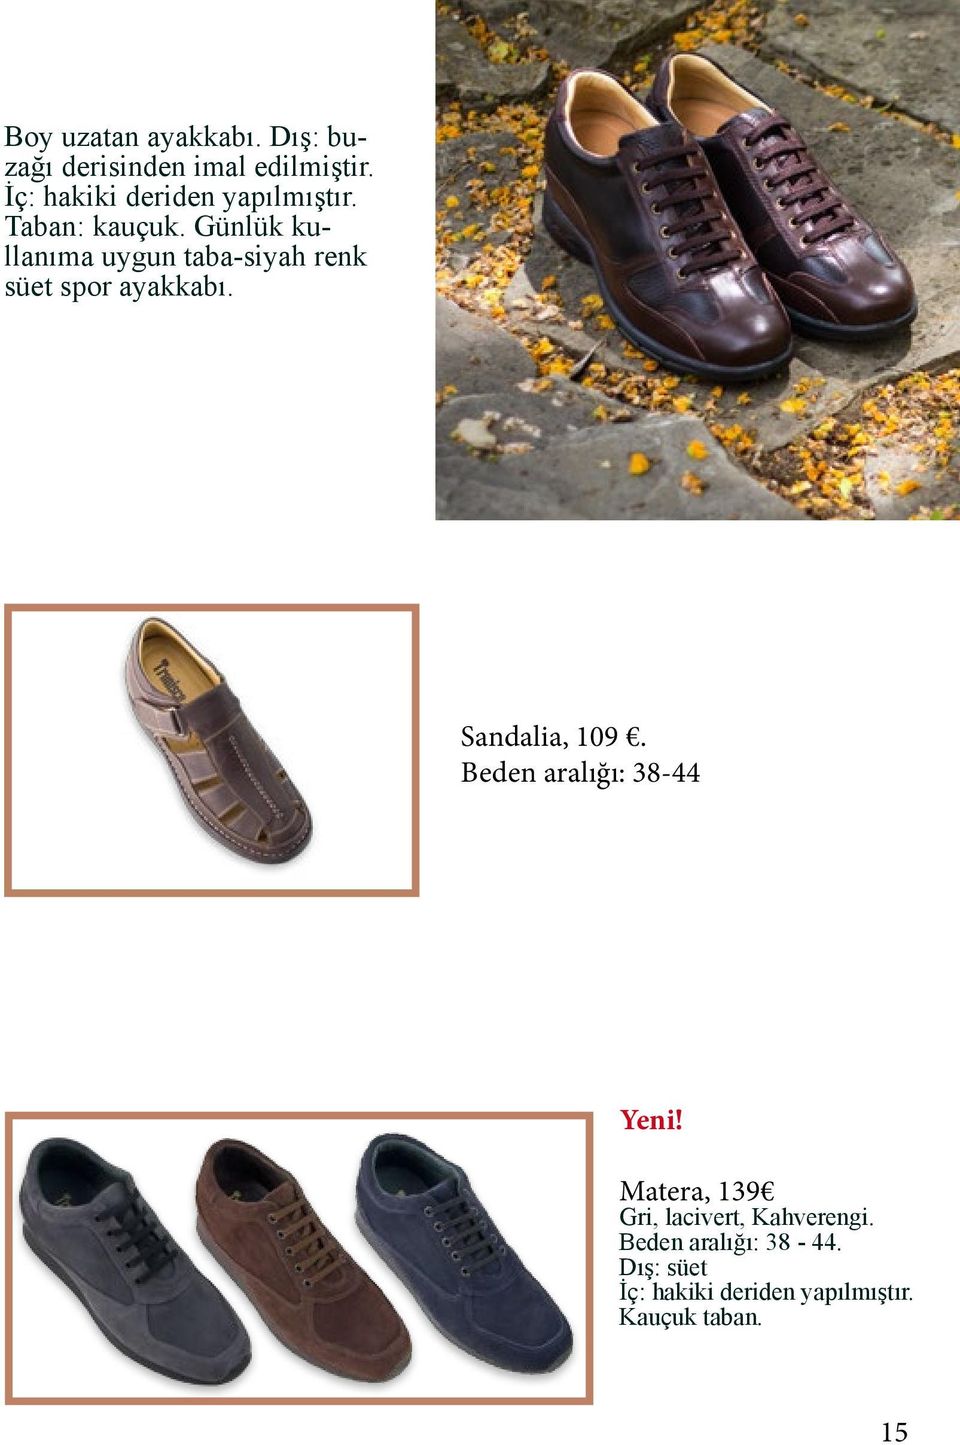 Günlük kullanıma uygun taba-siyah renk süet spor ayakkabı. Sandalia, 109.